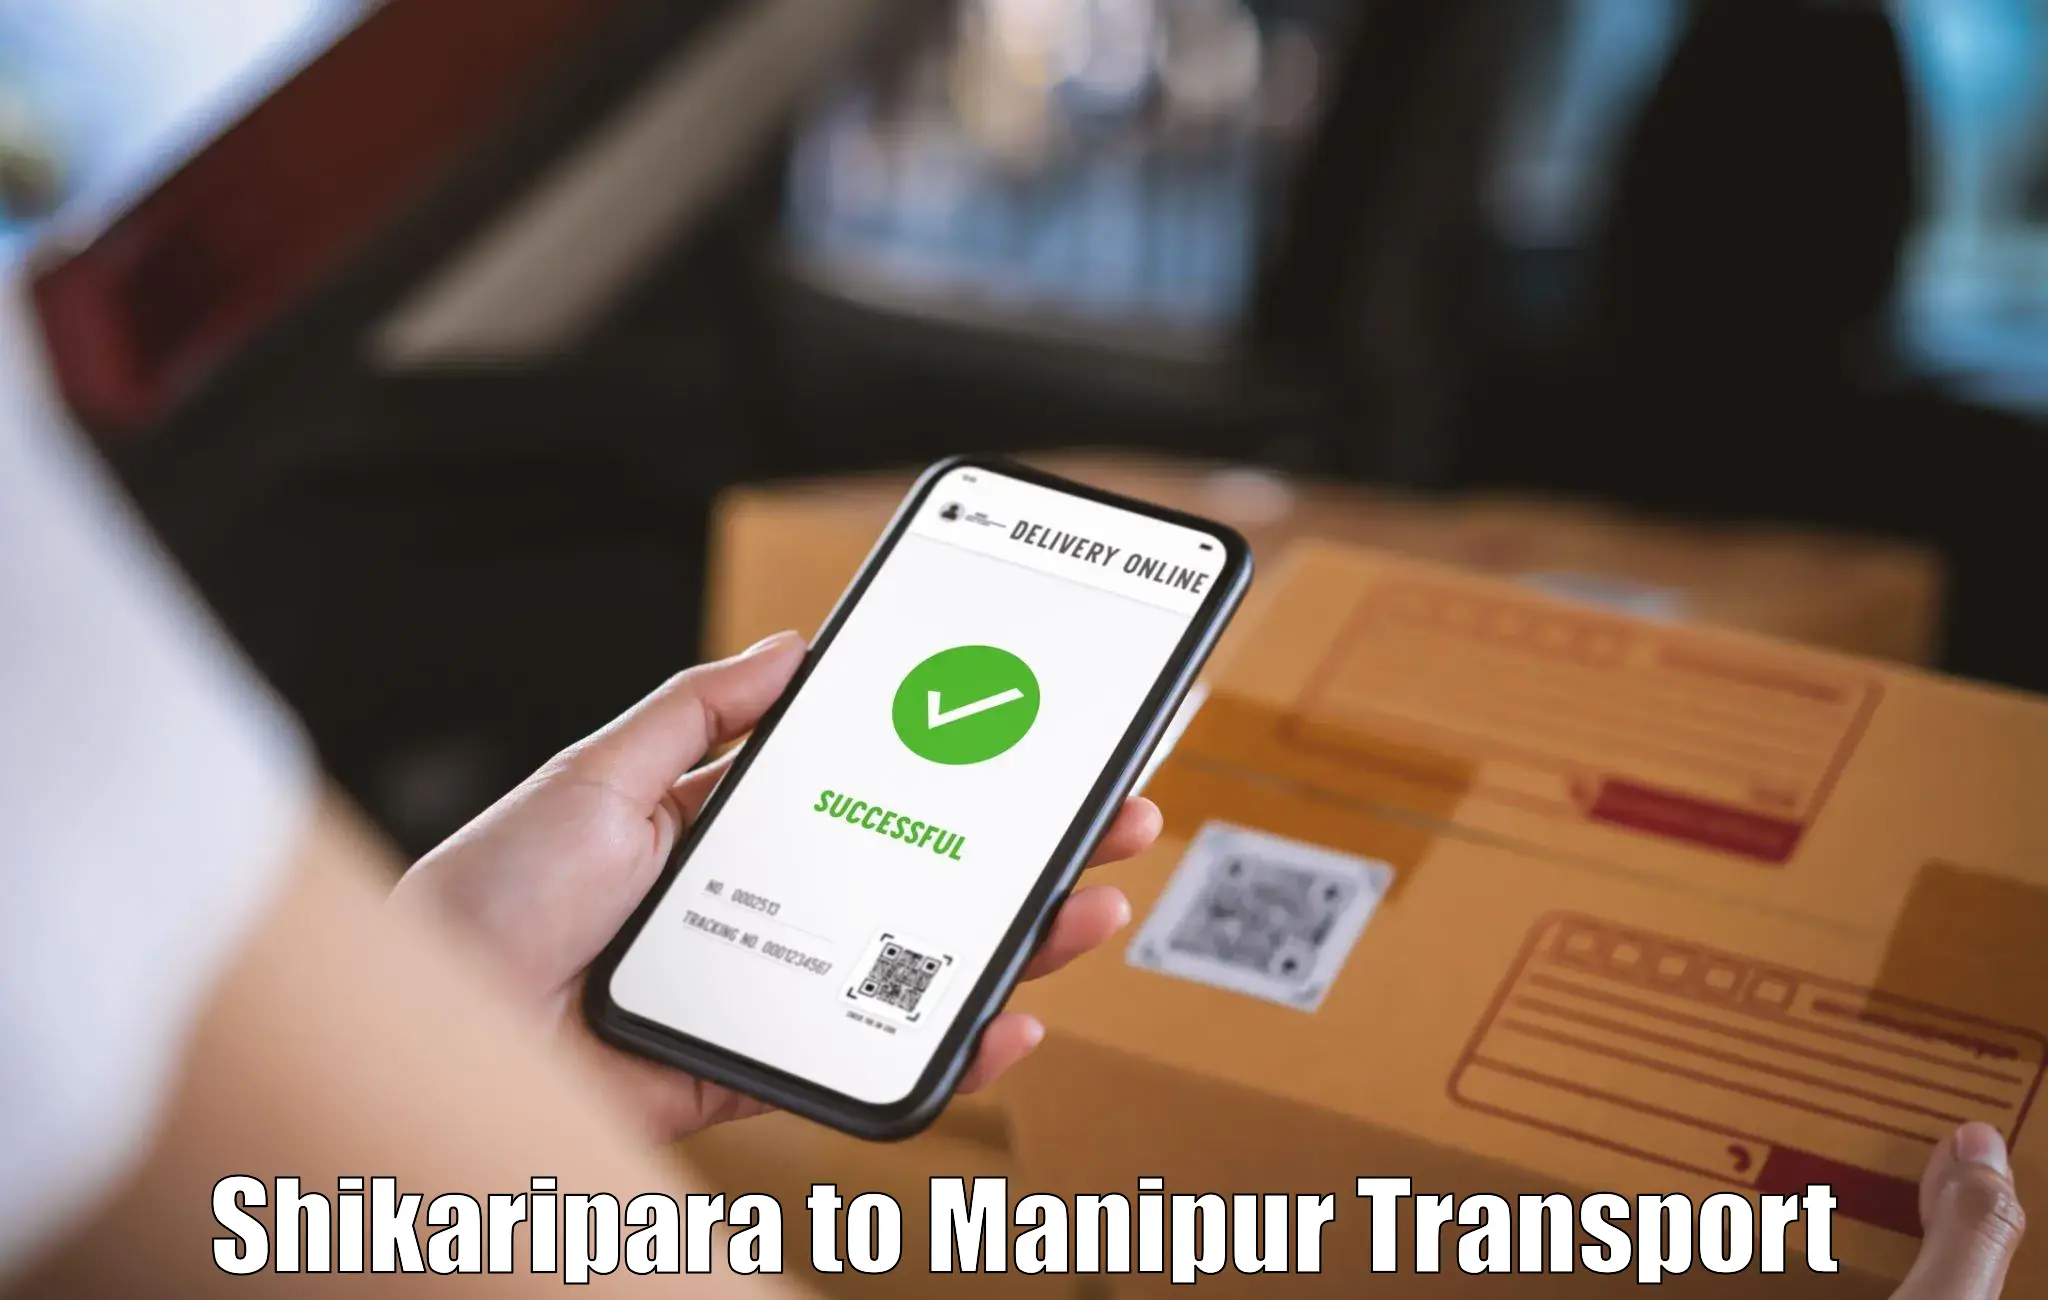 Two wheeler parcel service Shikaripara to Manipur